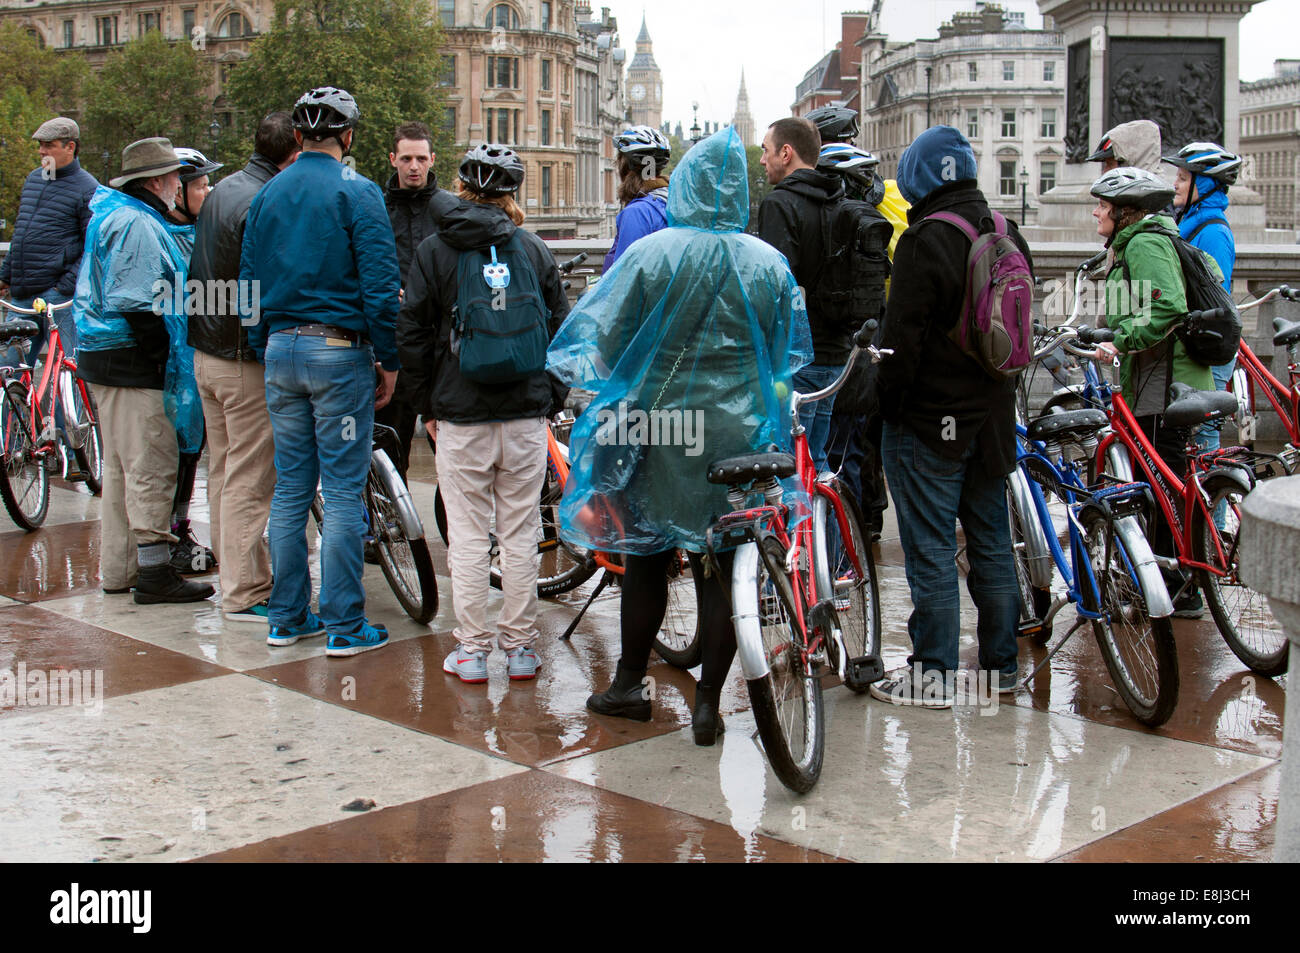 Persone su tour in bicicletta in condizioni di bagnato, Trafalgar Square, London, Regno Unito Foto Stock